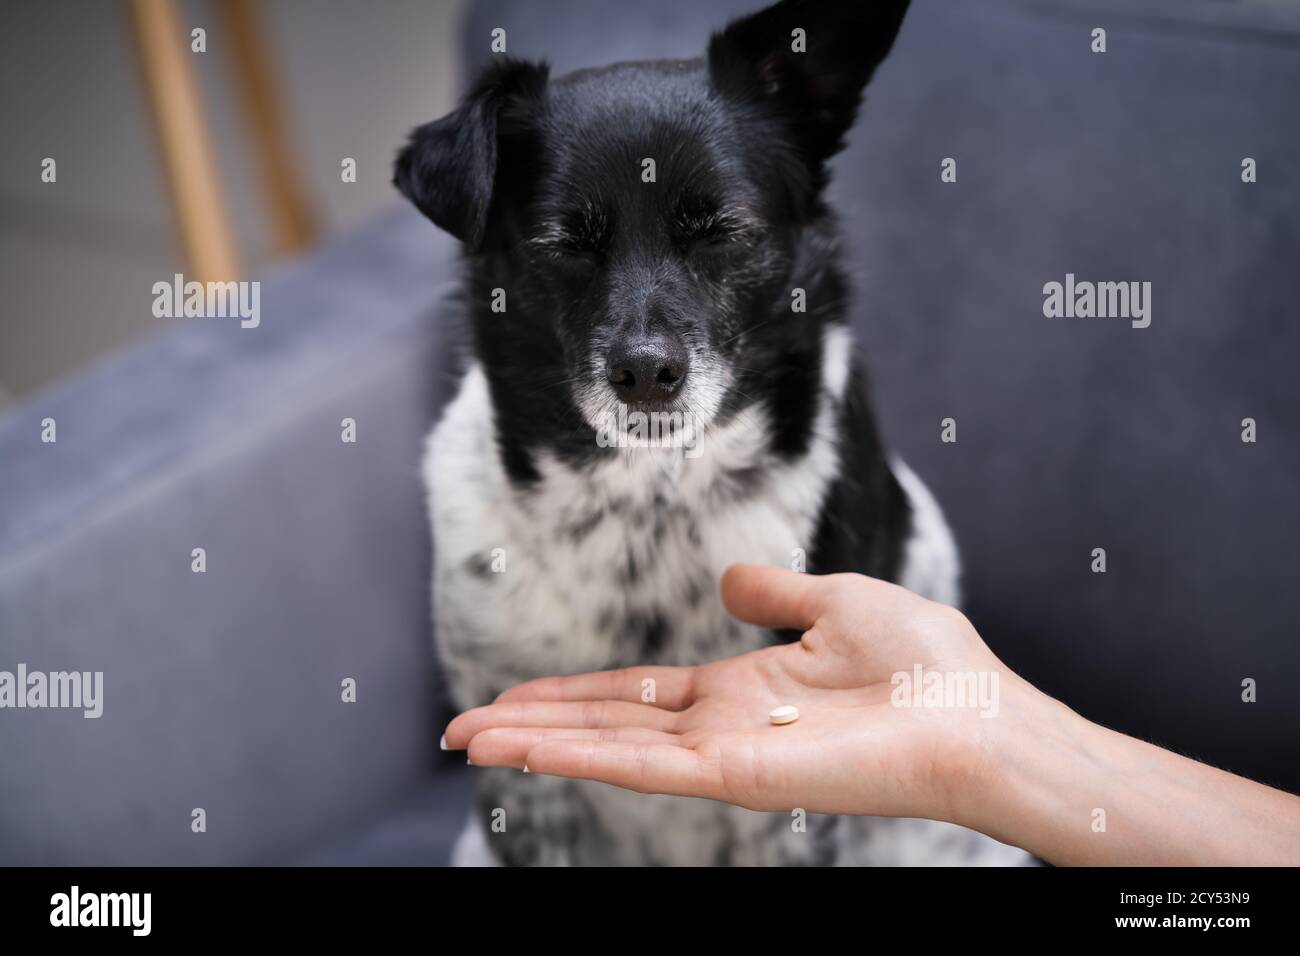 Hundepille Stockfotos und -bilder Kaufen - Alamy